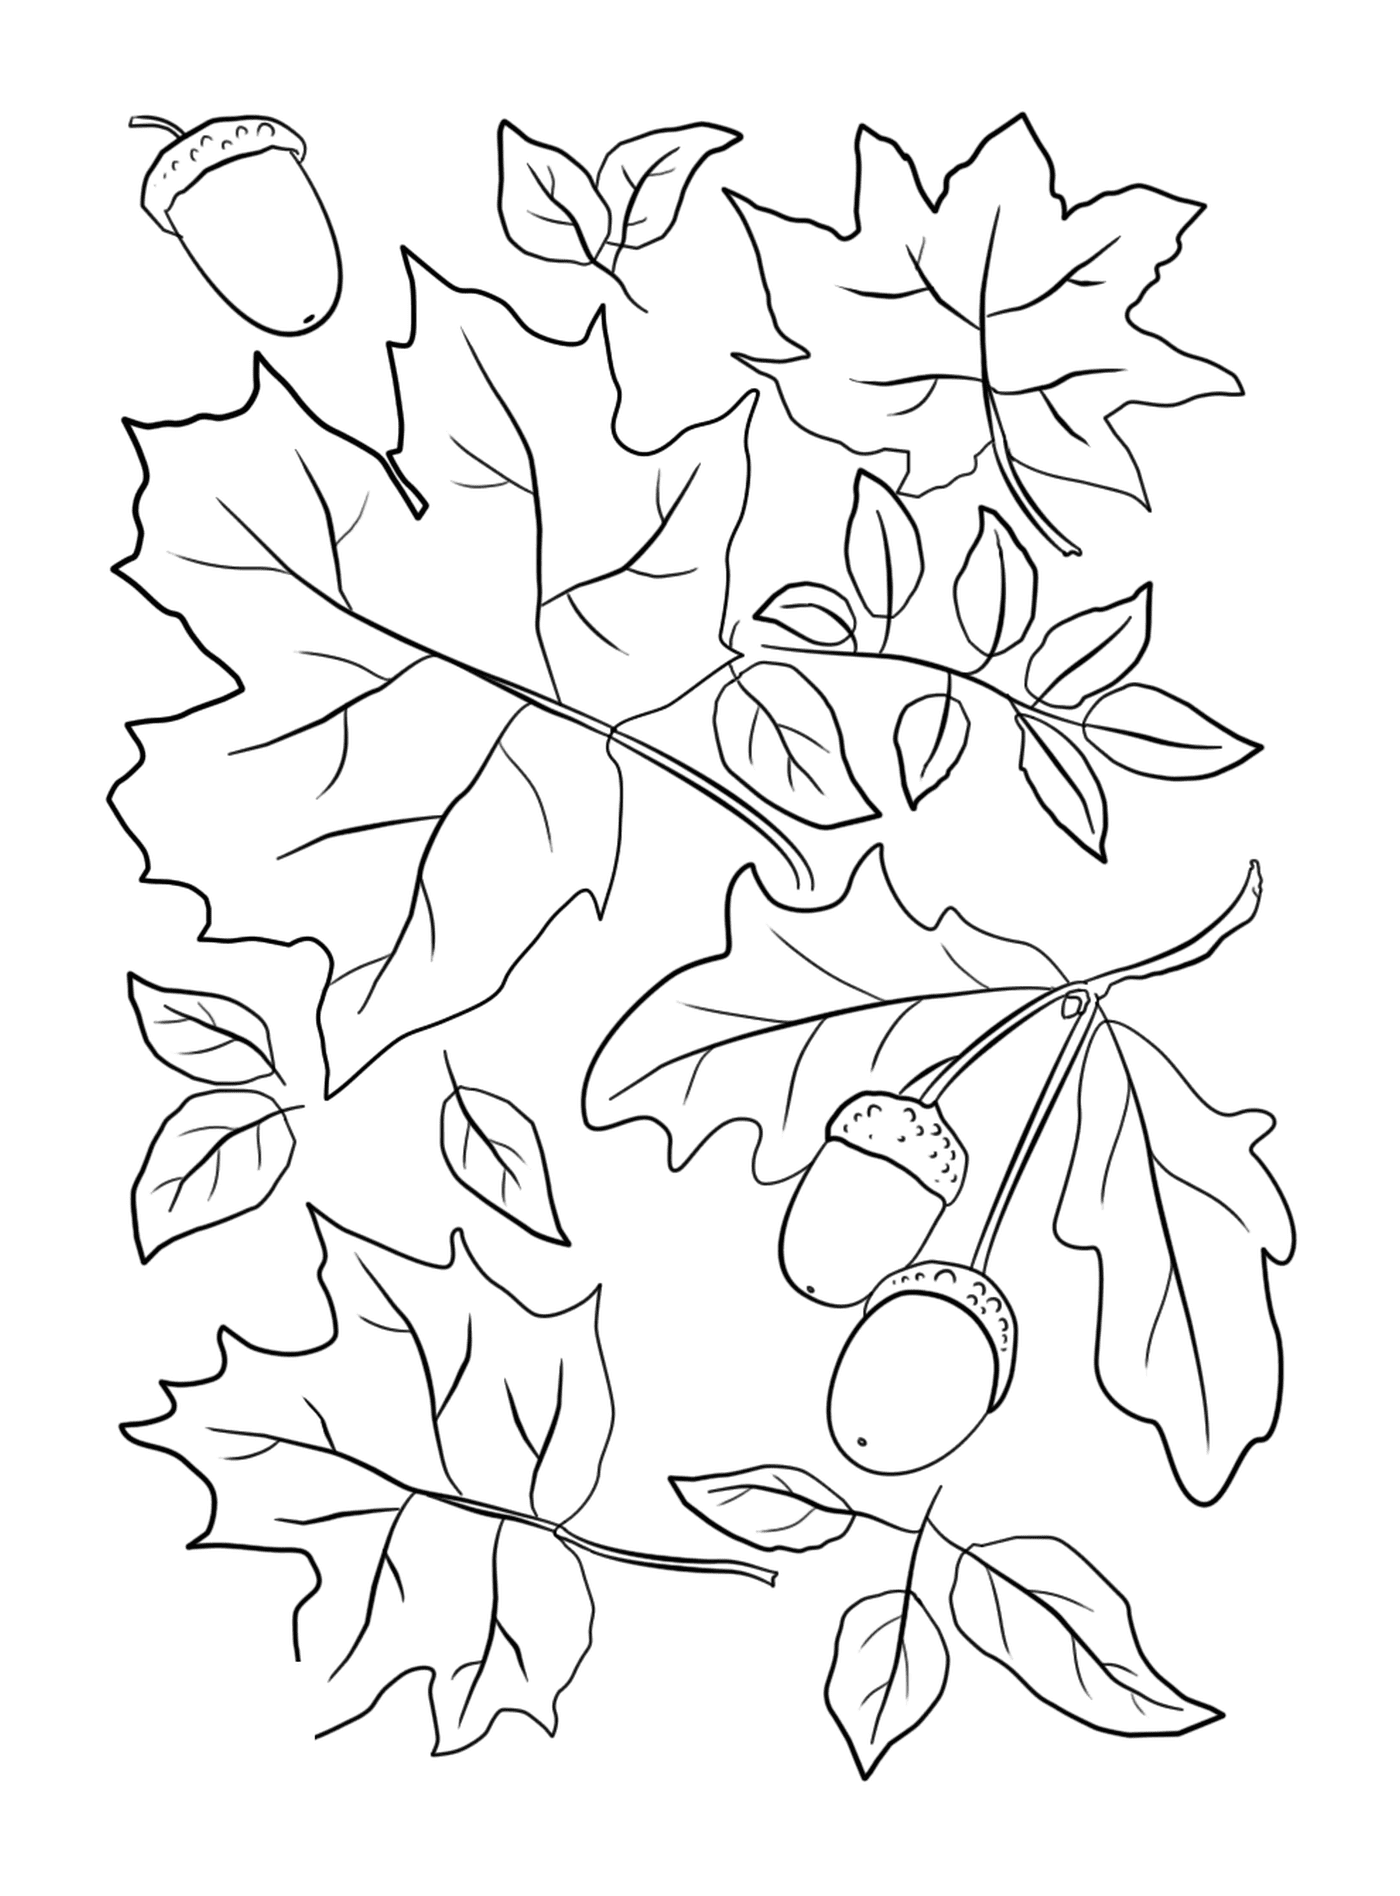  Folhas e bolotas em uma árvore 